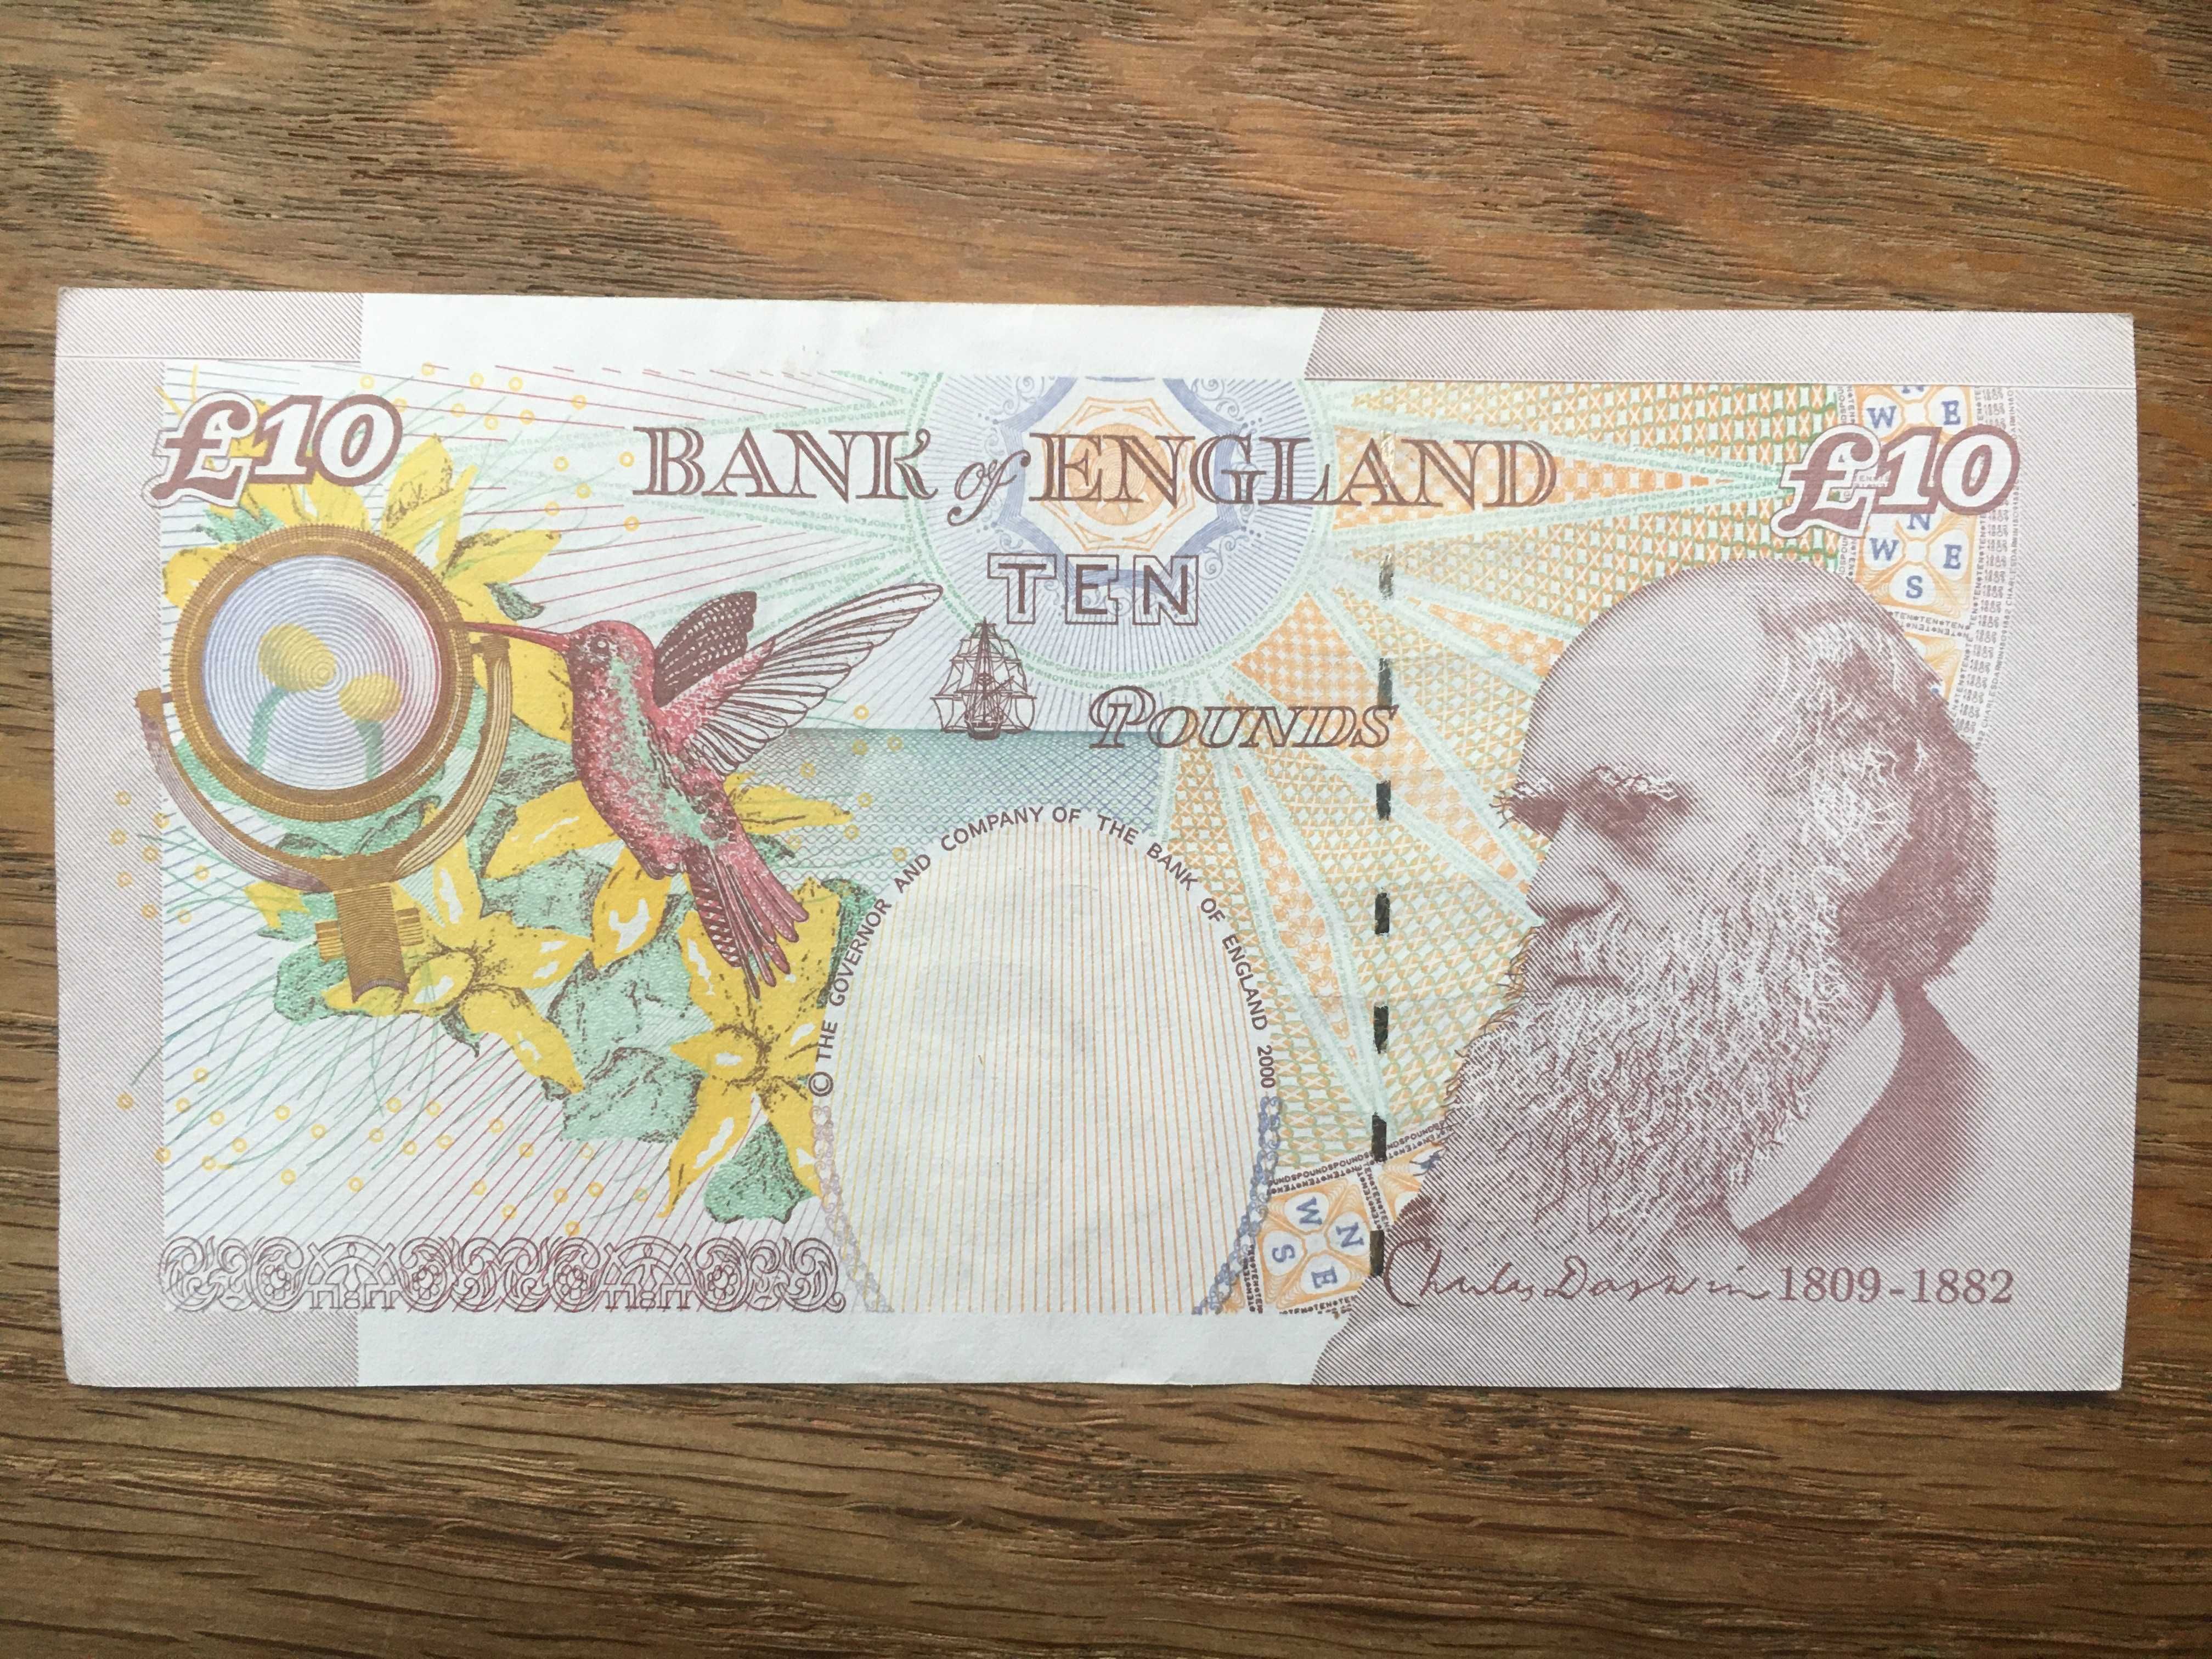 Banknot 10 £ Funt Funtów Anglia - wycofany dla kolekcjonera, dowóz 0zł